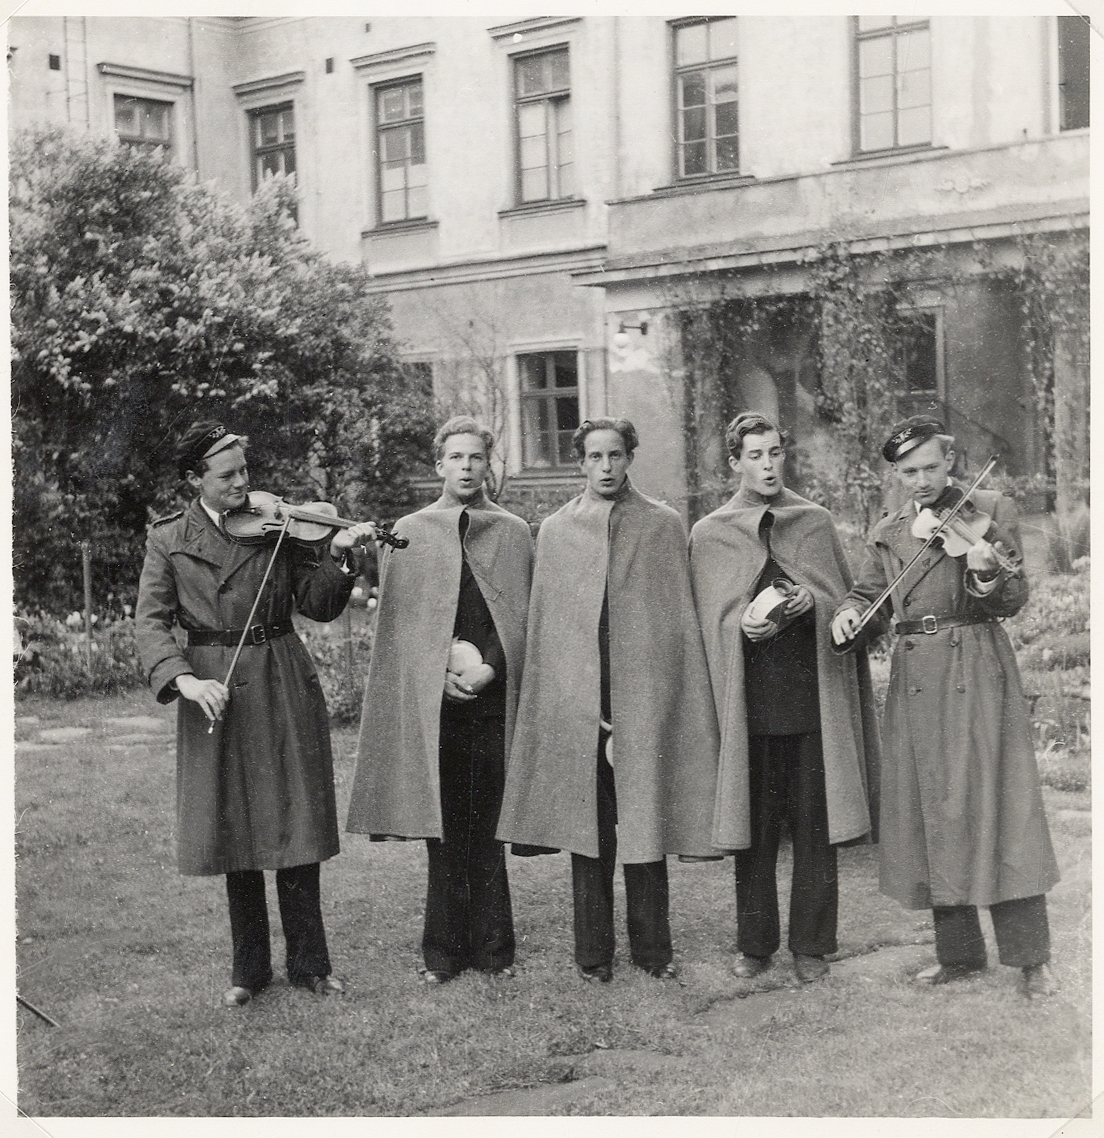 Några "djäknar" i cape sjunger och spelar på residensets innergård, i samband med läroverkets 300-årsjubileum.
Växjö 1943.